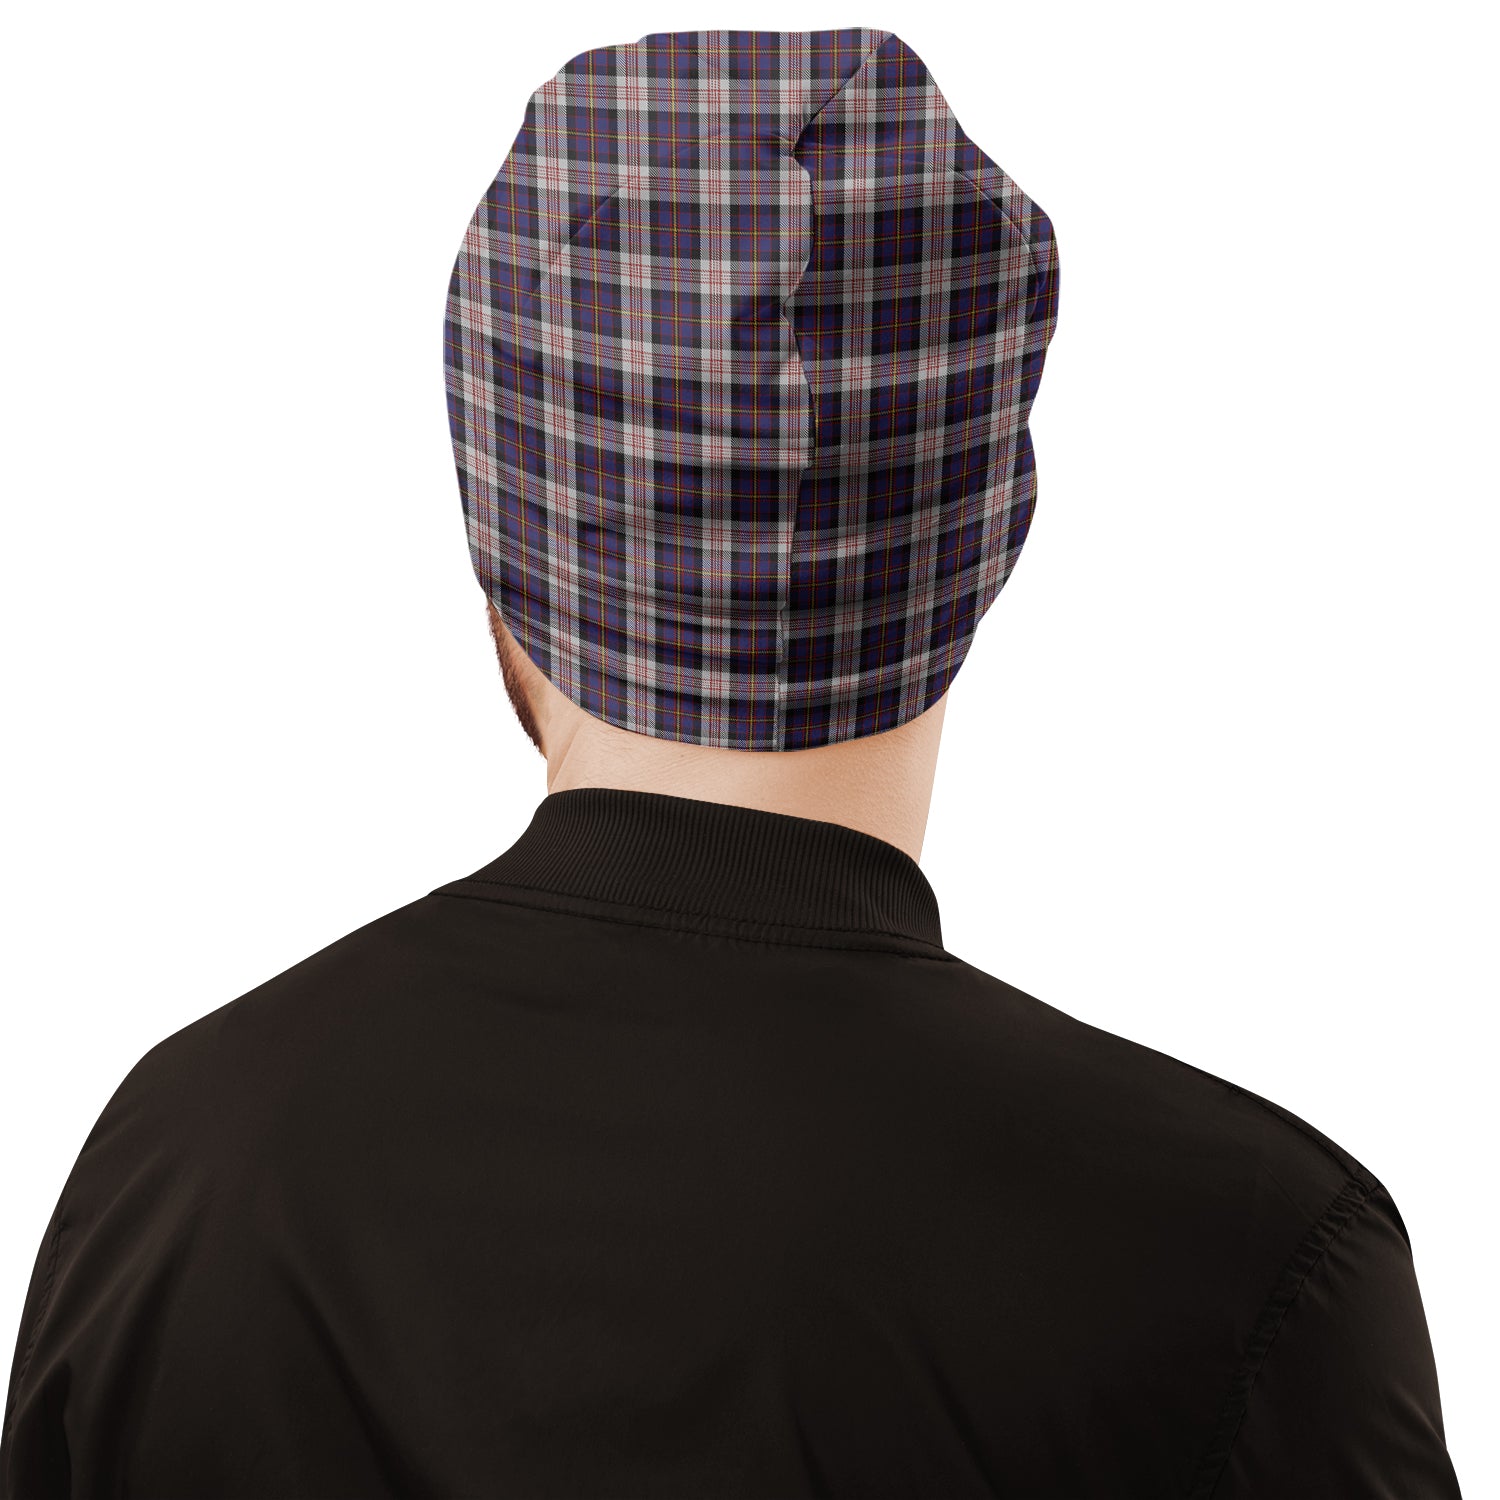 cameron-of-erracht-dress-tartan-beanies-hat